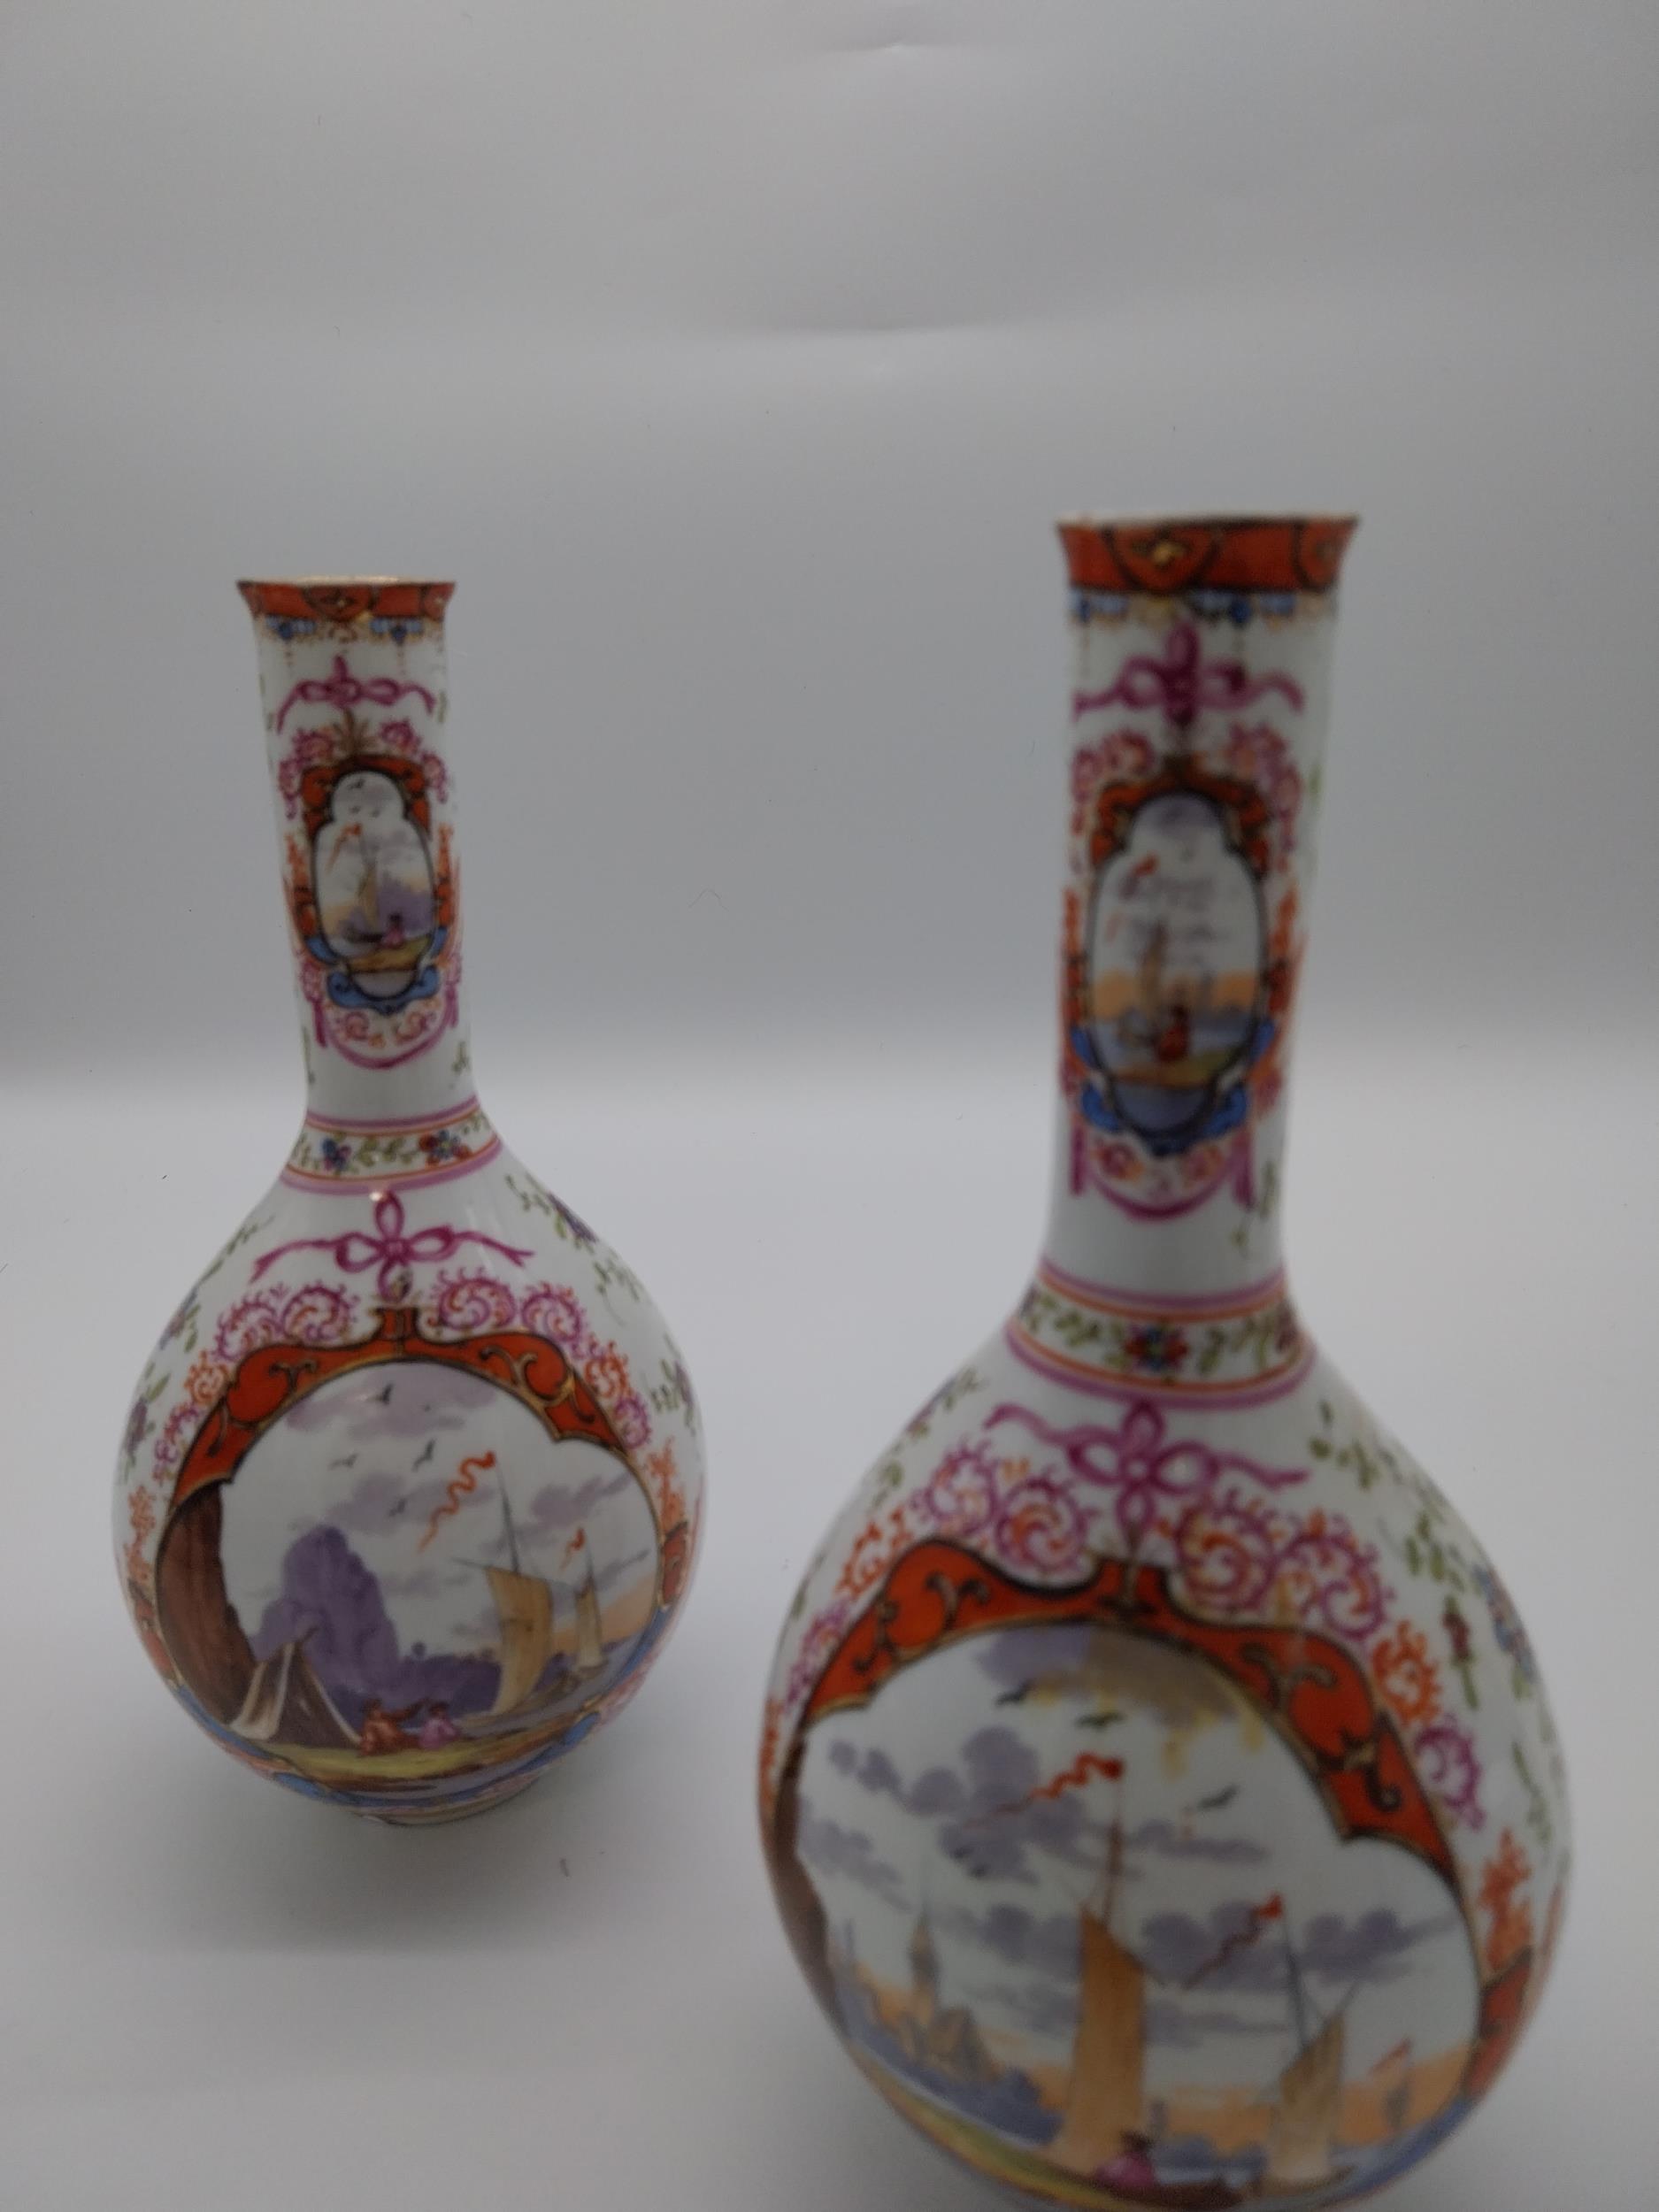 Pair of 19th C. hand painted ceramic Dresden vases depicting Venetian scenes {24 cm H x 11 cm - Image 2 of 4